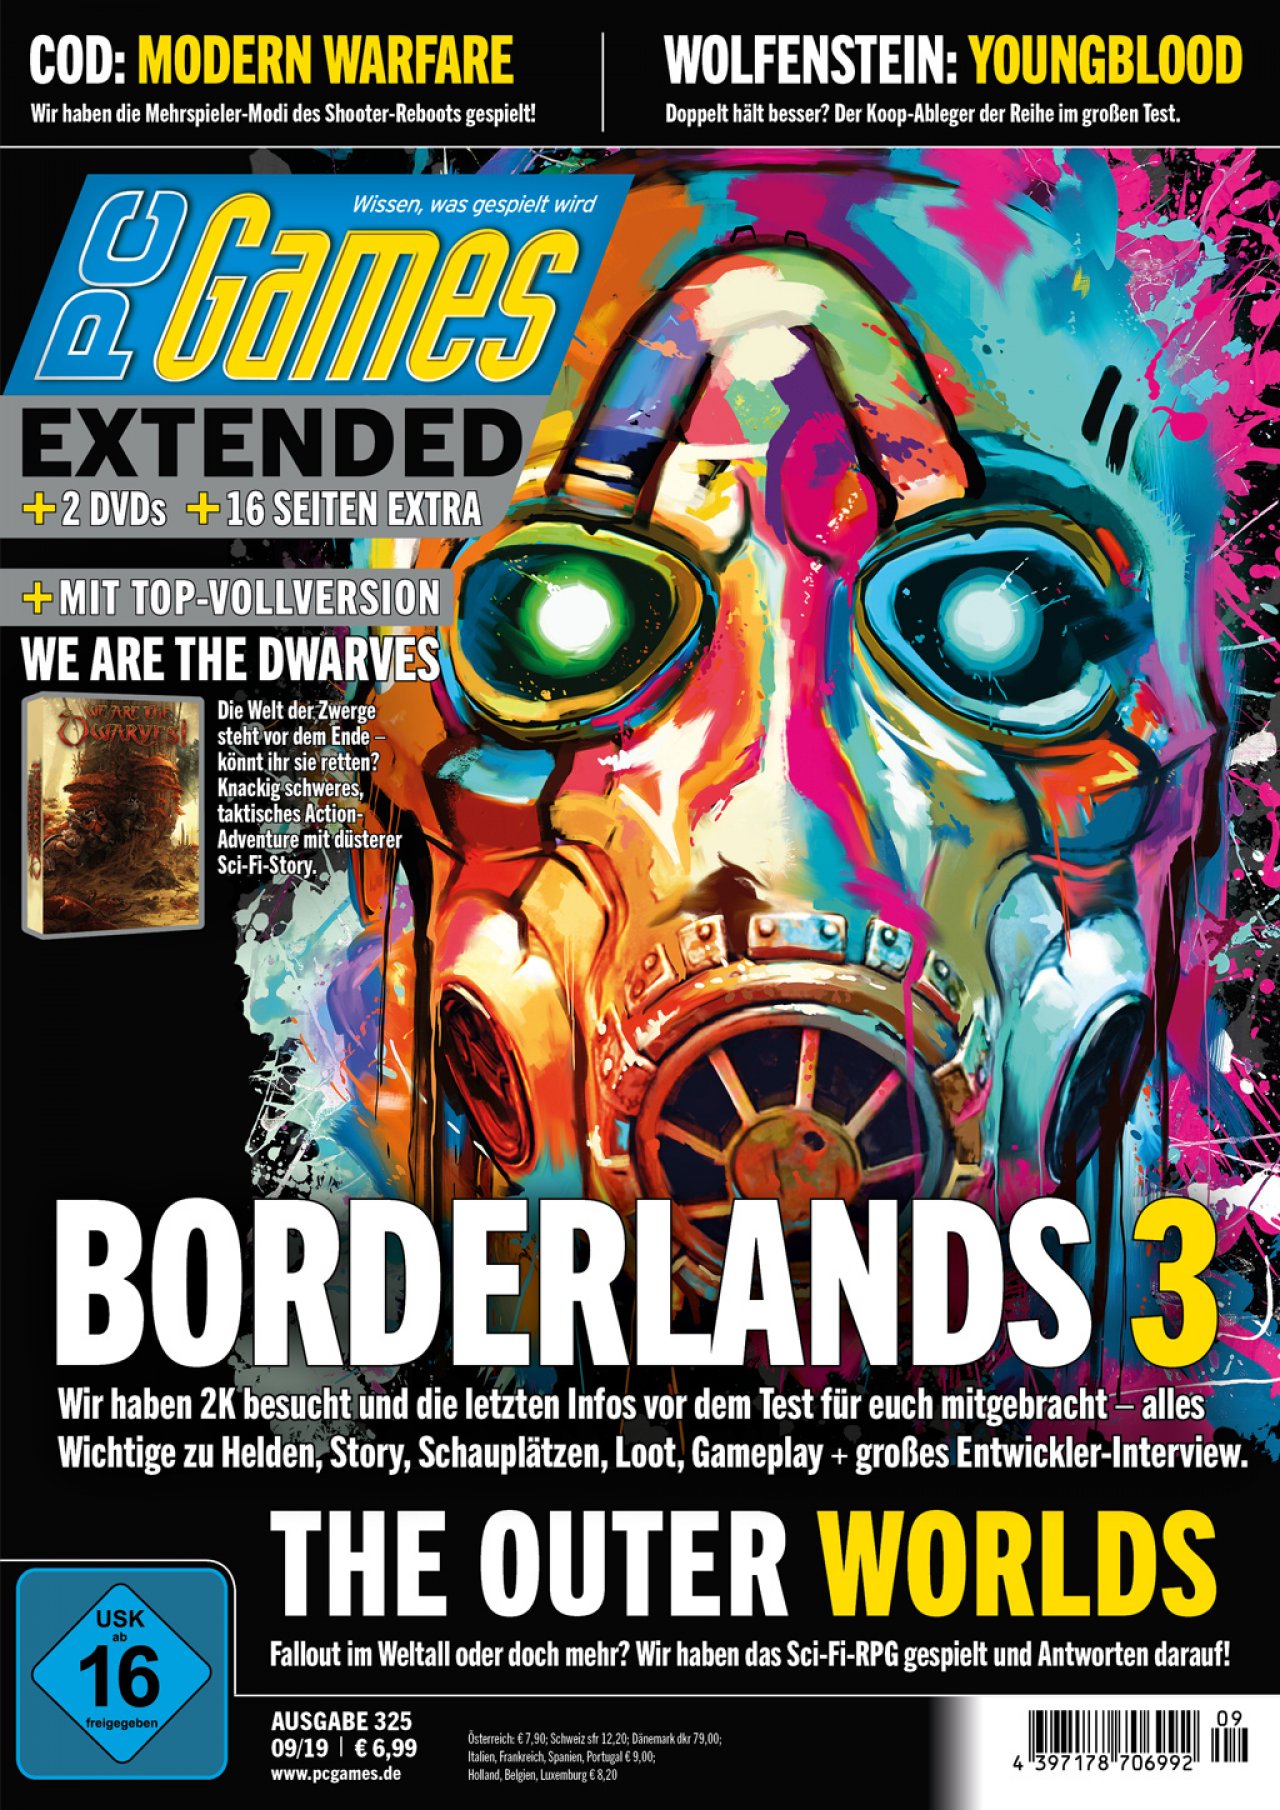 Borderlands gifs videospiele bilder üppig HQ-Bild